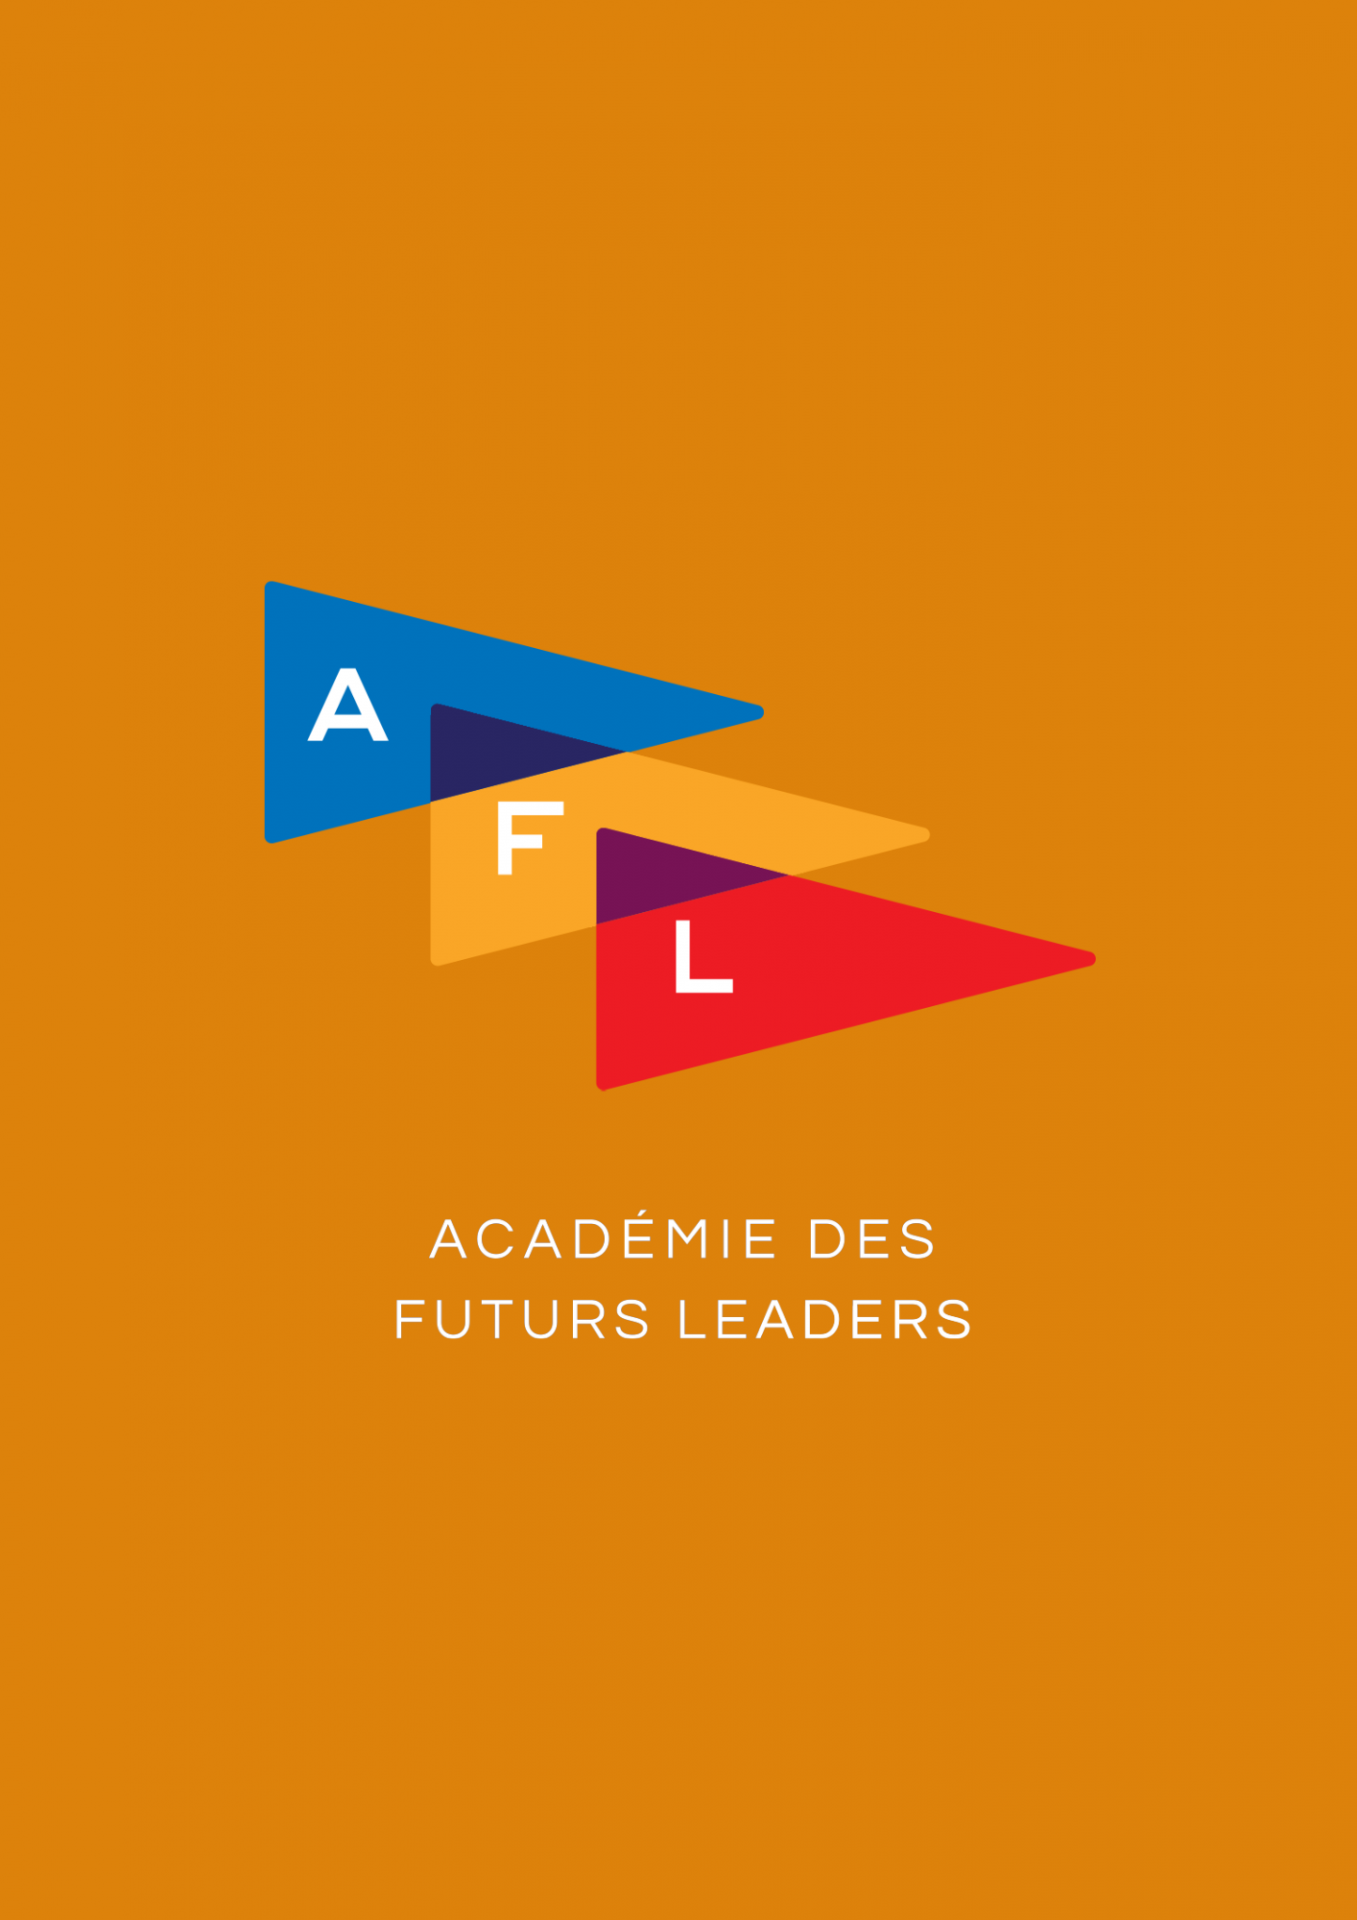 Academie logo